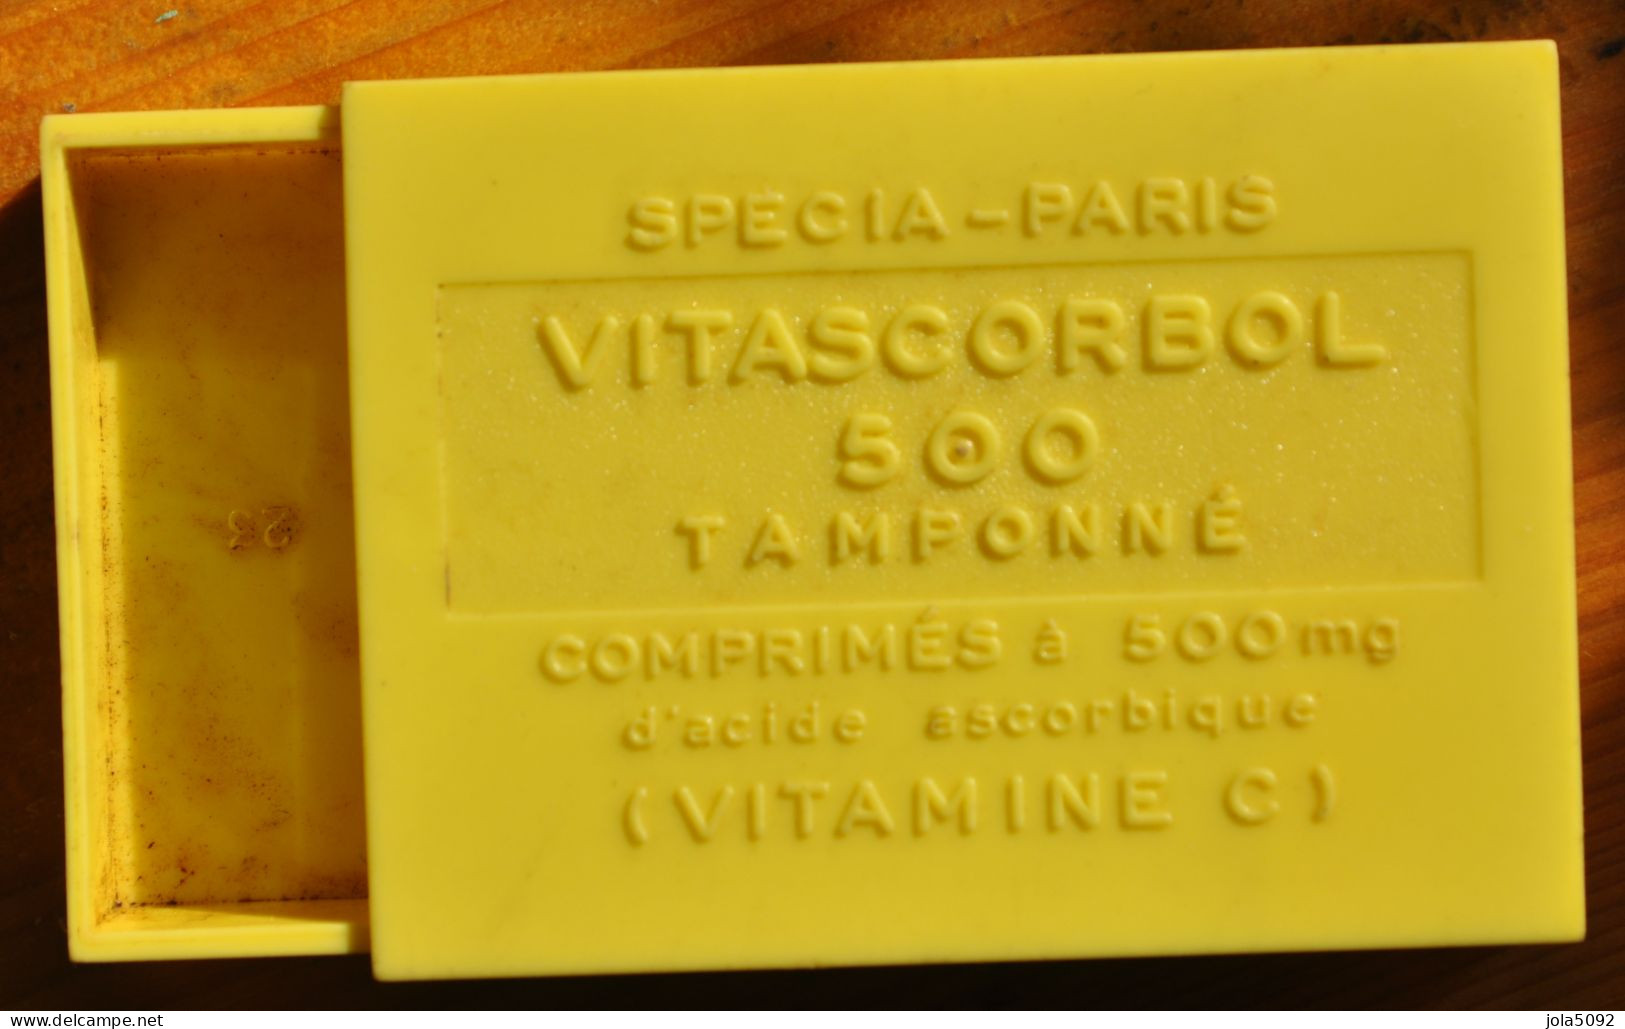 Ancienne Boite En Plastique Pastilles VITASCORBOL 500 - Vitamines C - SPECIA PARIS - Scatole